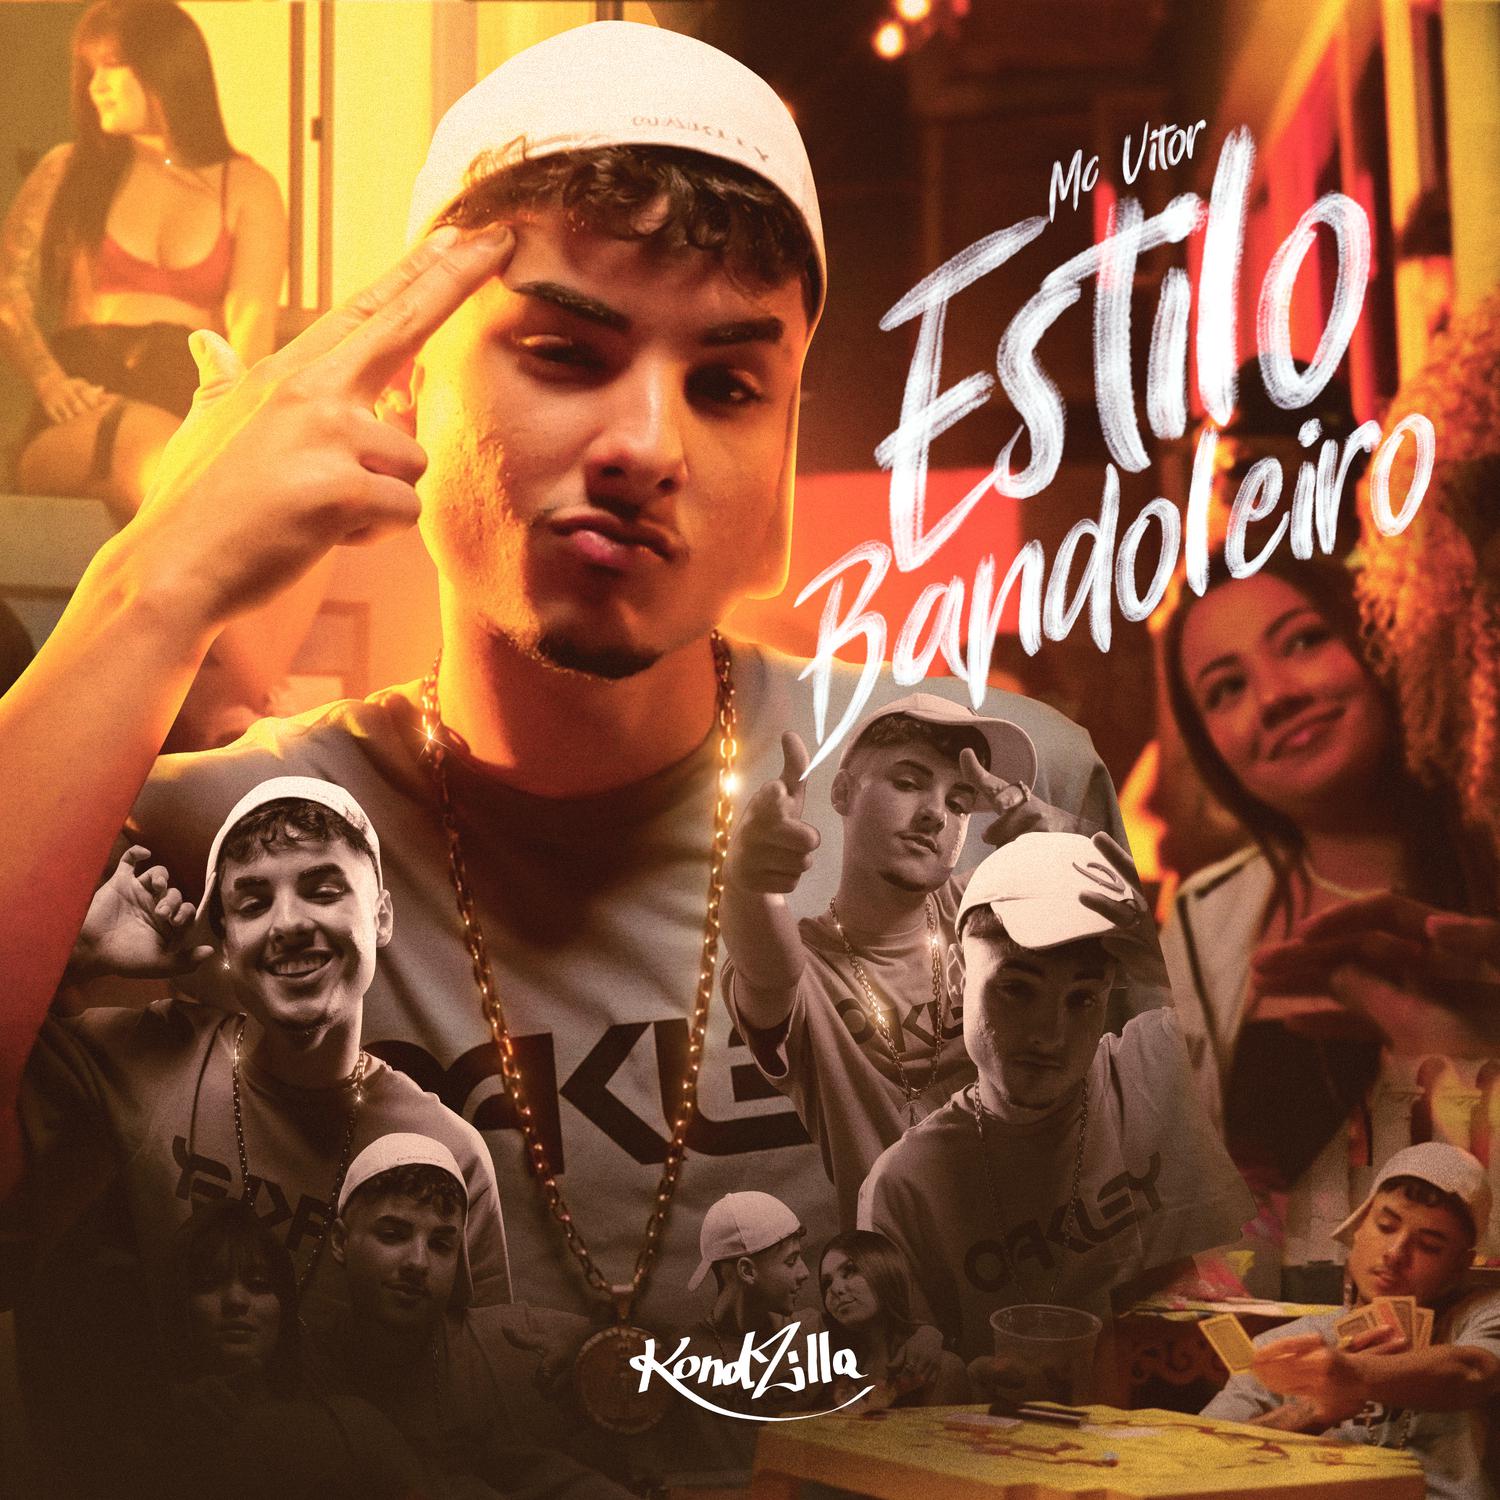 MC Vitor - Estilo Bandoleiro